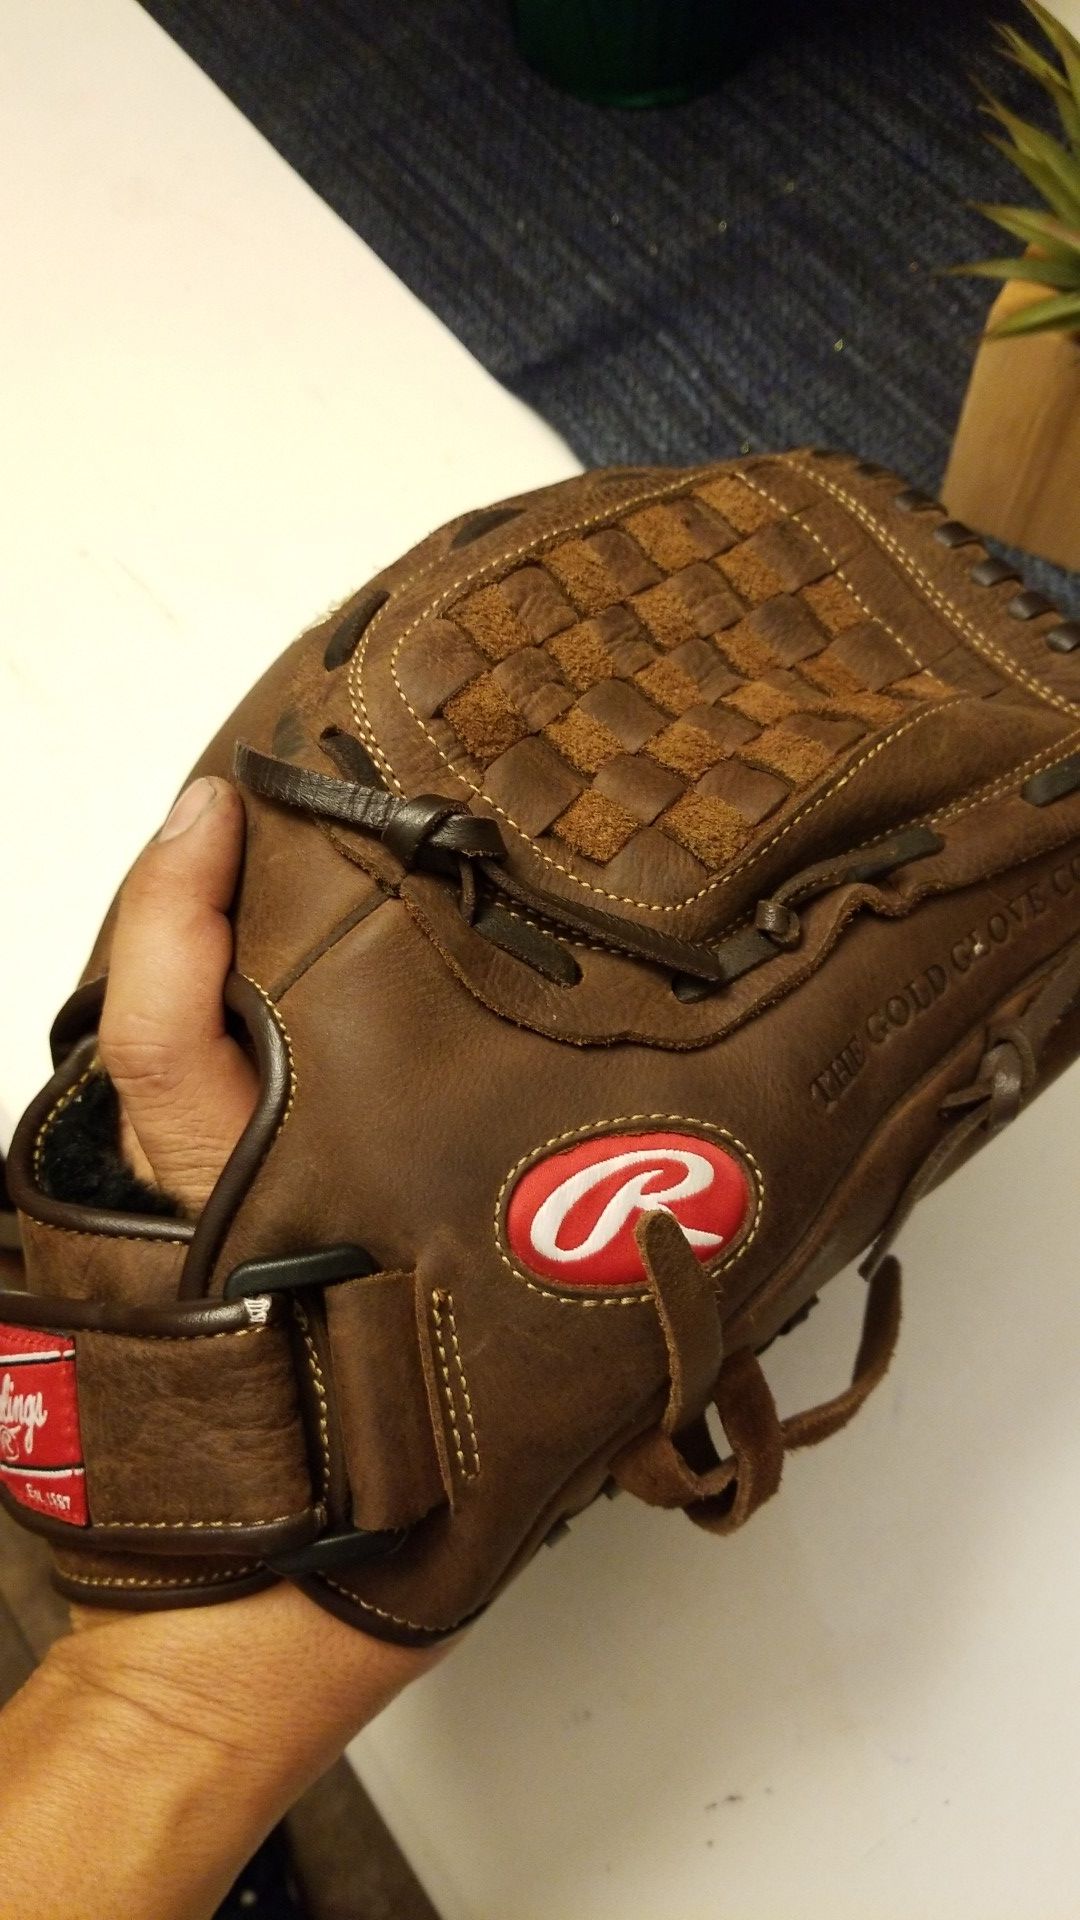 Rawlings 12 1/2 in baseball or softball glove